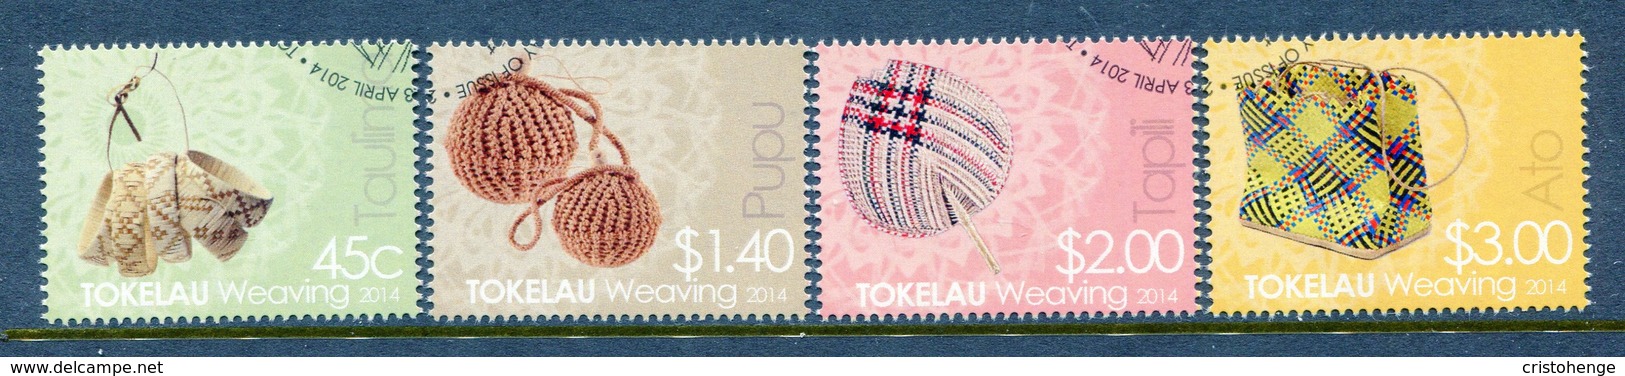 Tokelau 2014 Weaving Used (SG 463-466) - Tokelau